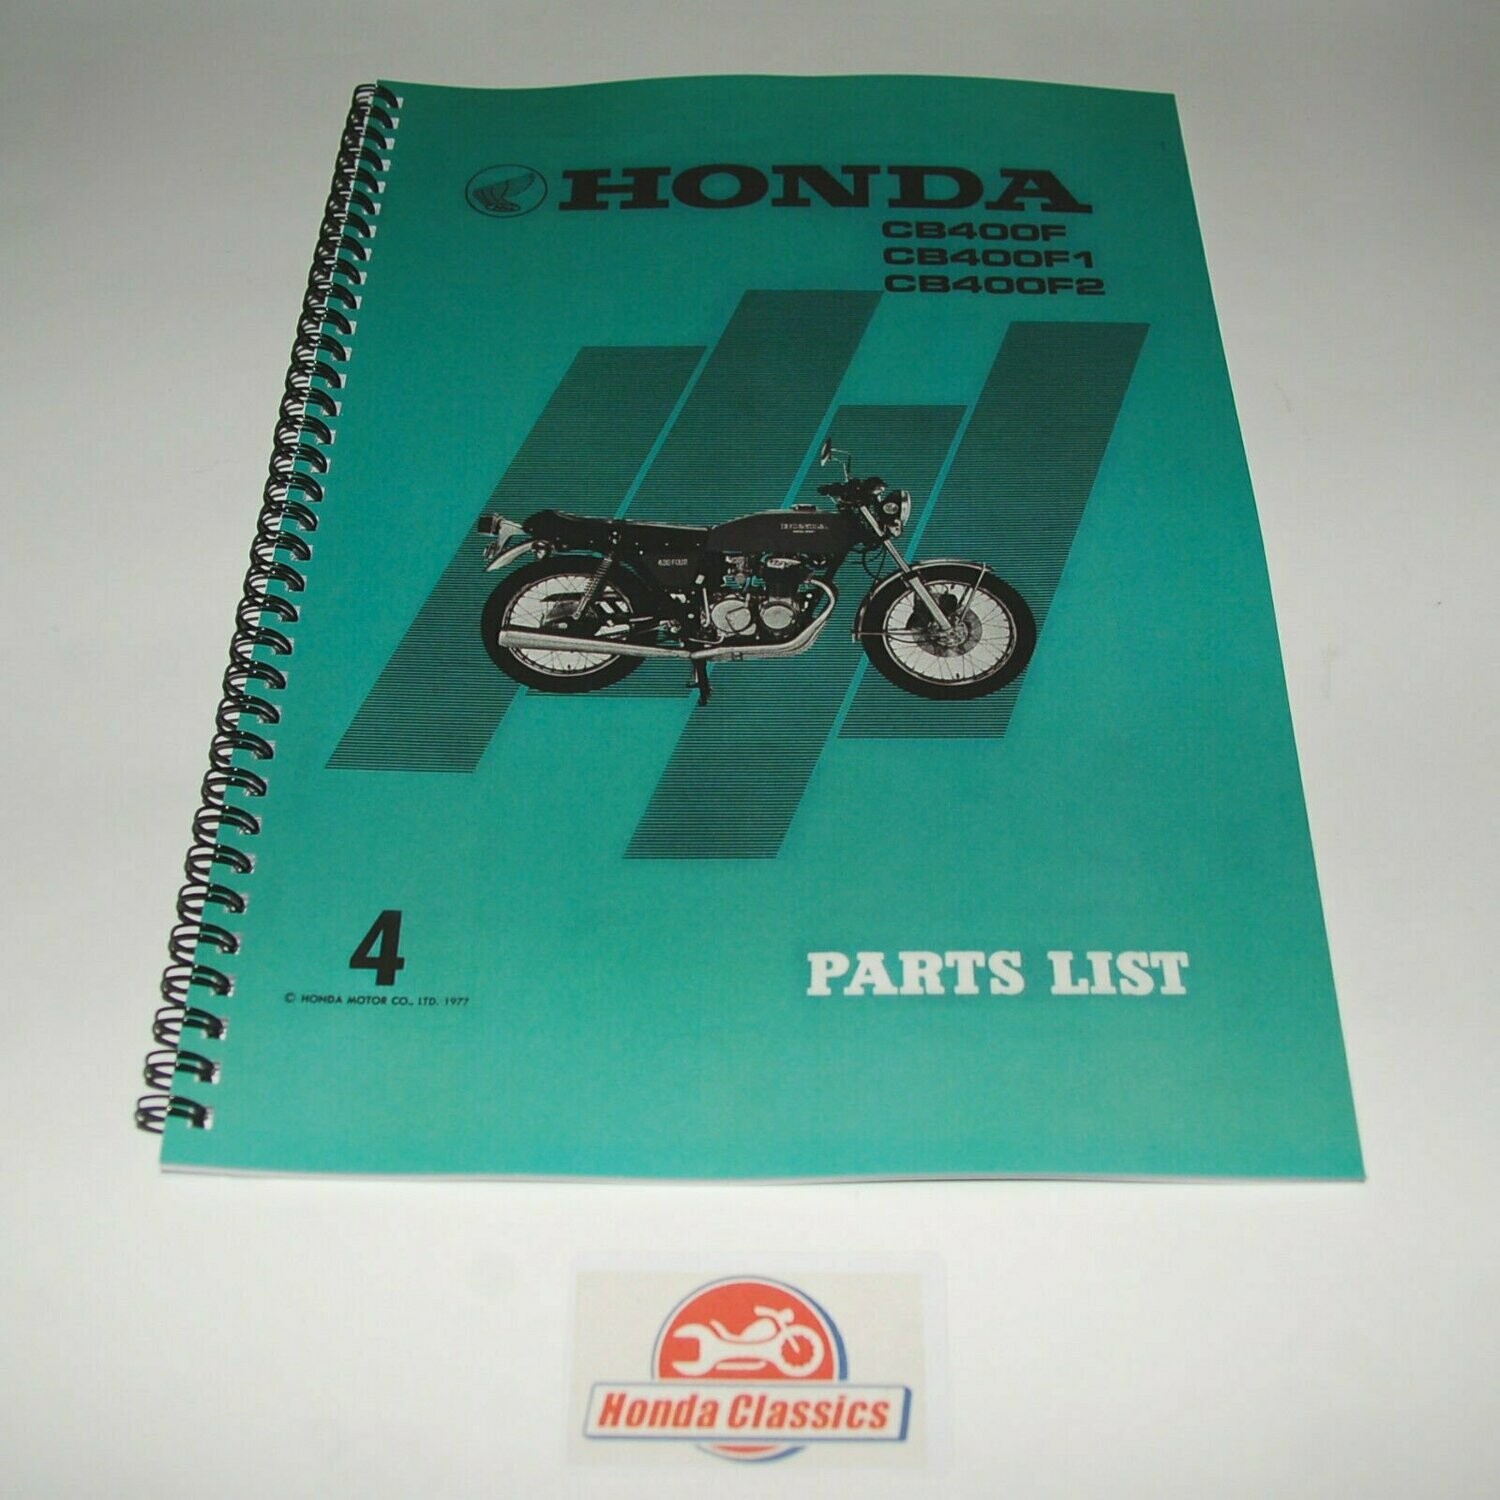 Factory Parts List Manual, CB400F - HPL001